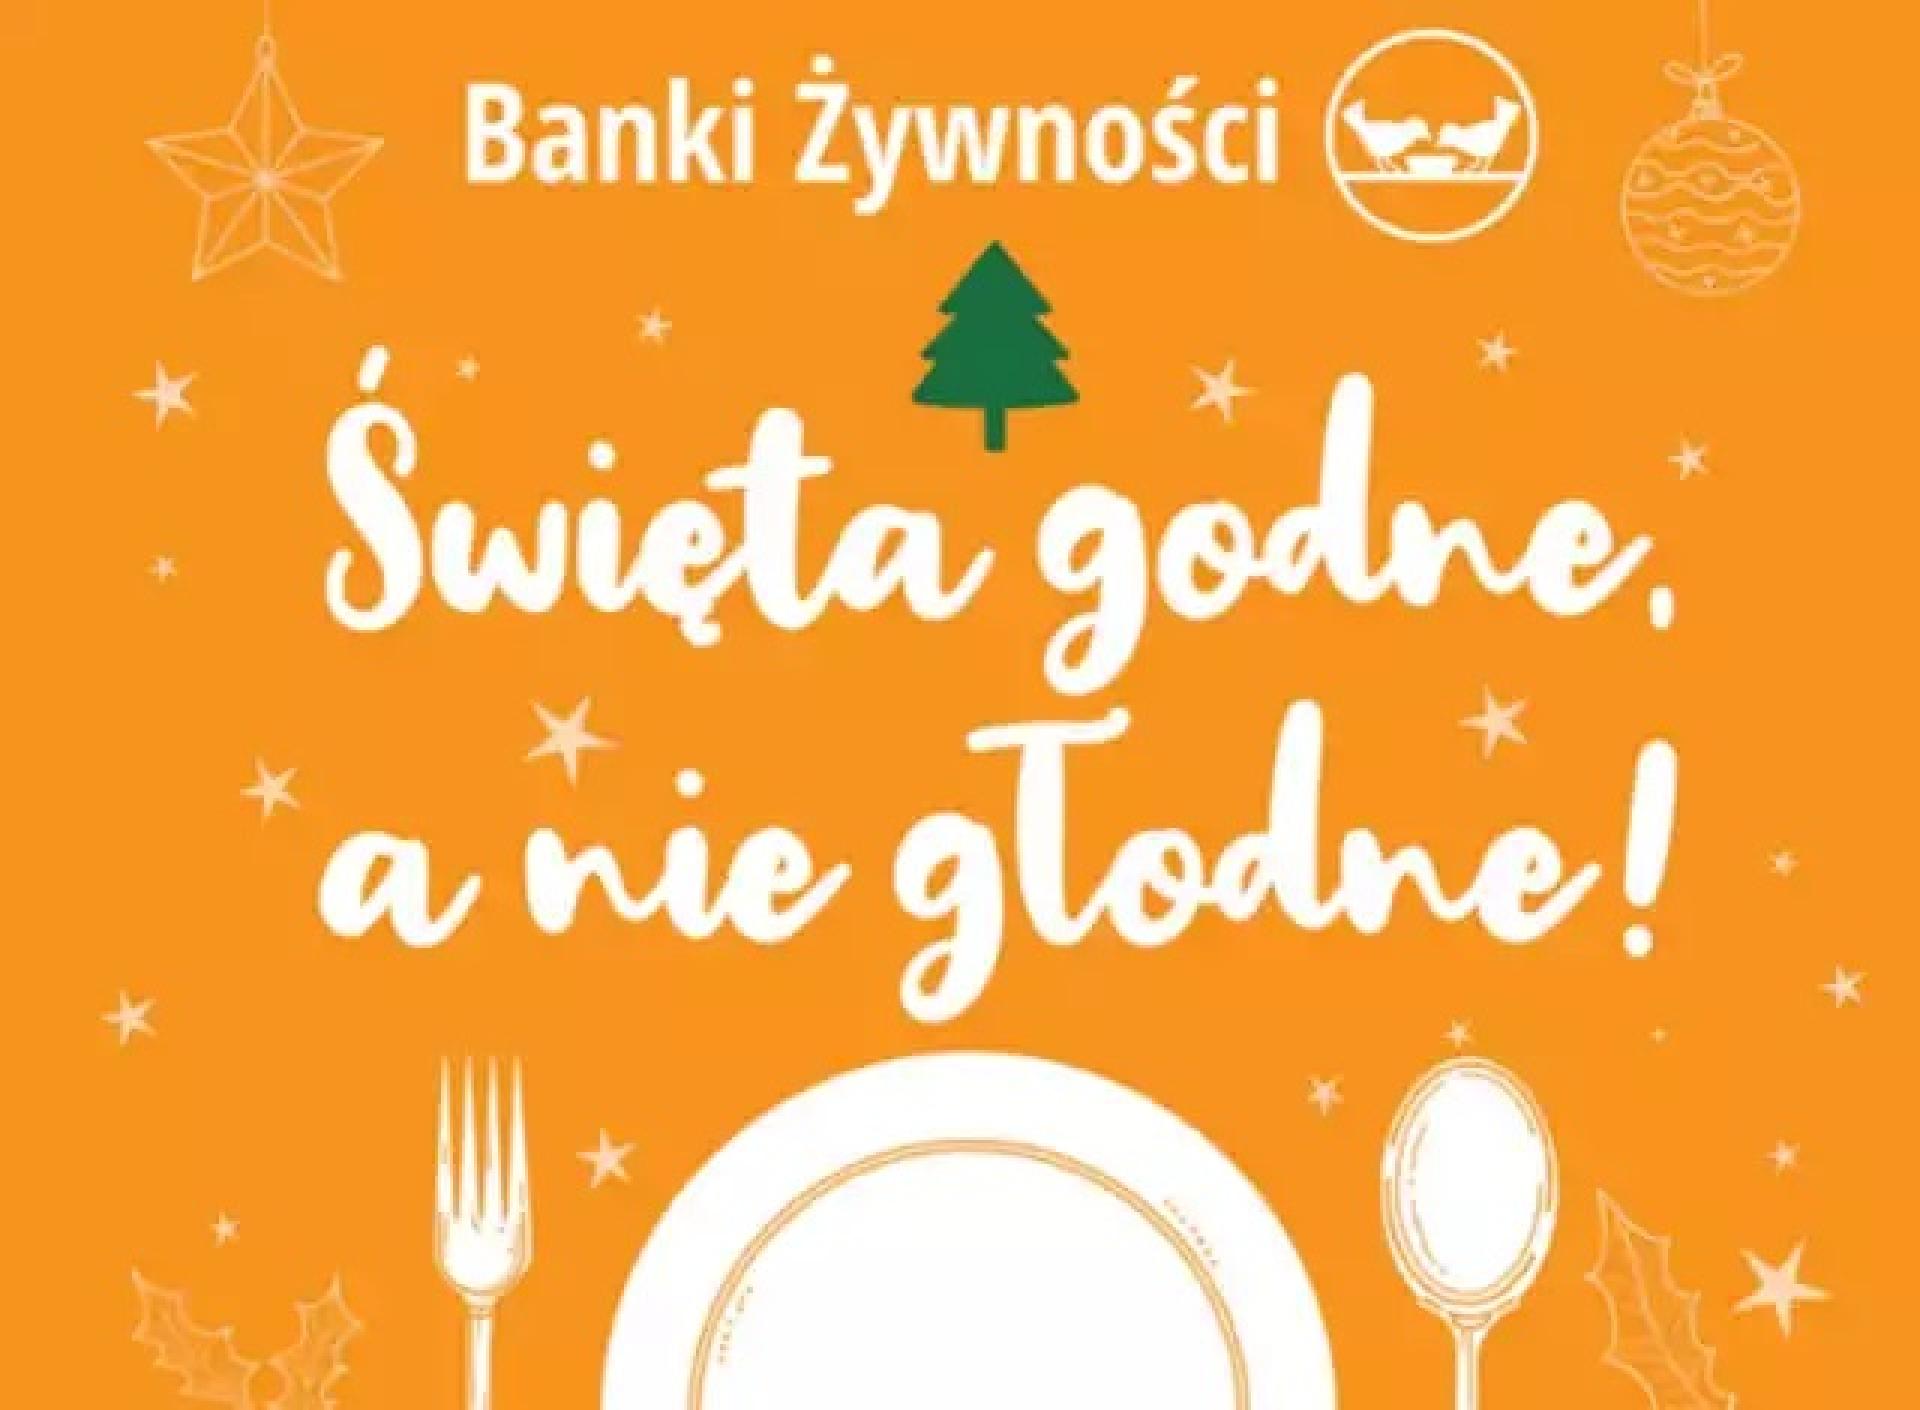 Świąteczna Zbiórka Żywności „Święta godne a nie głodne!”